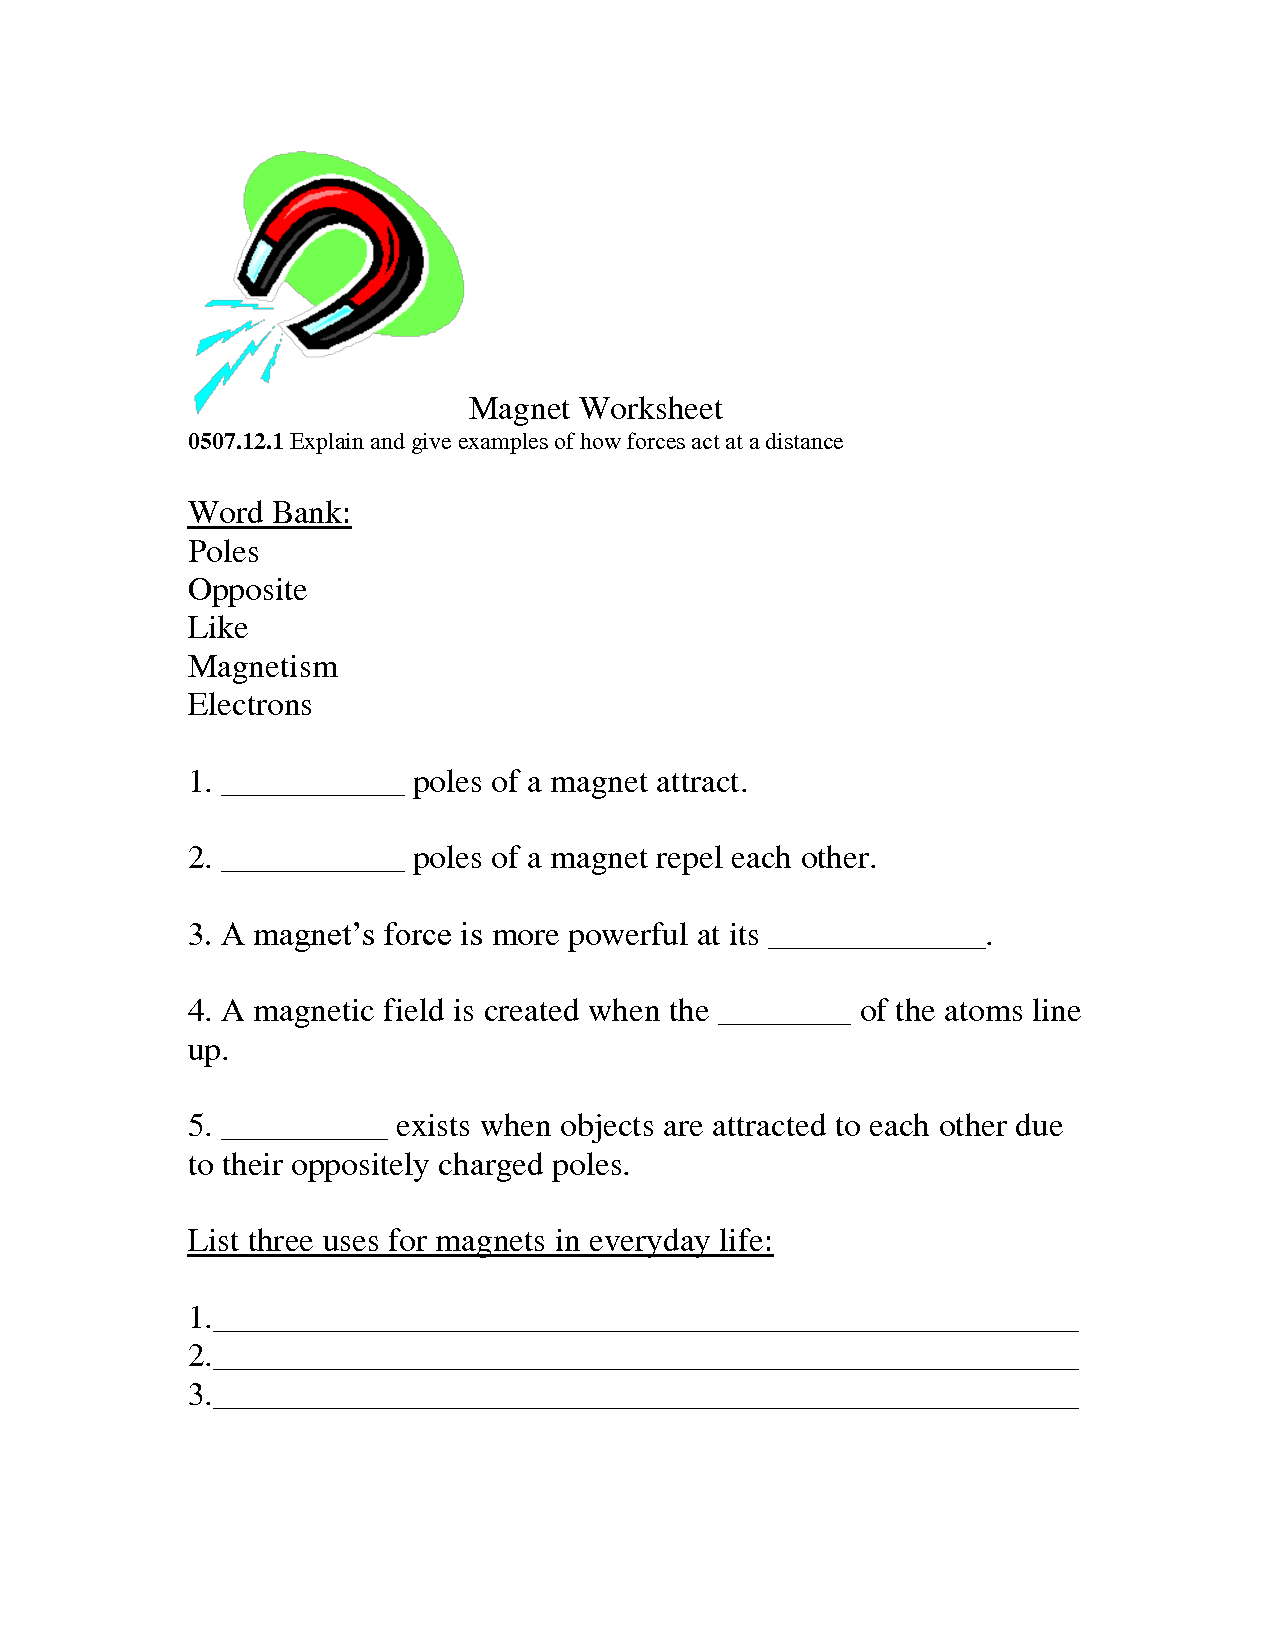 Magnets Worksheets 2nd Grade Image